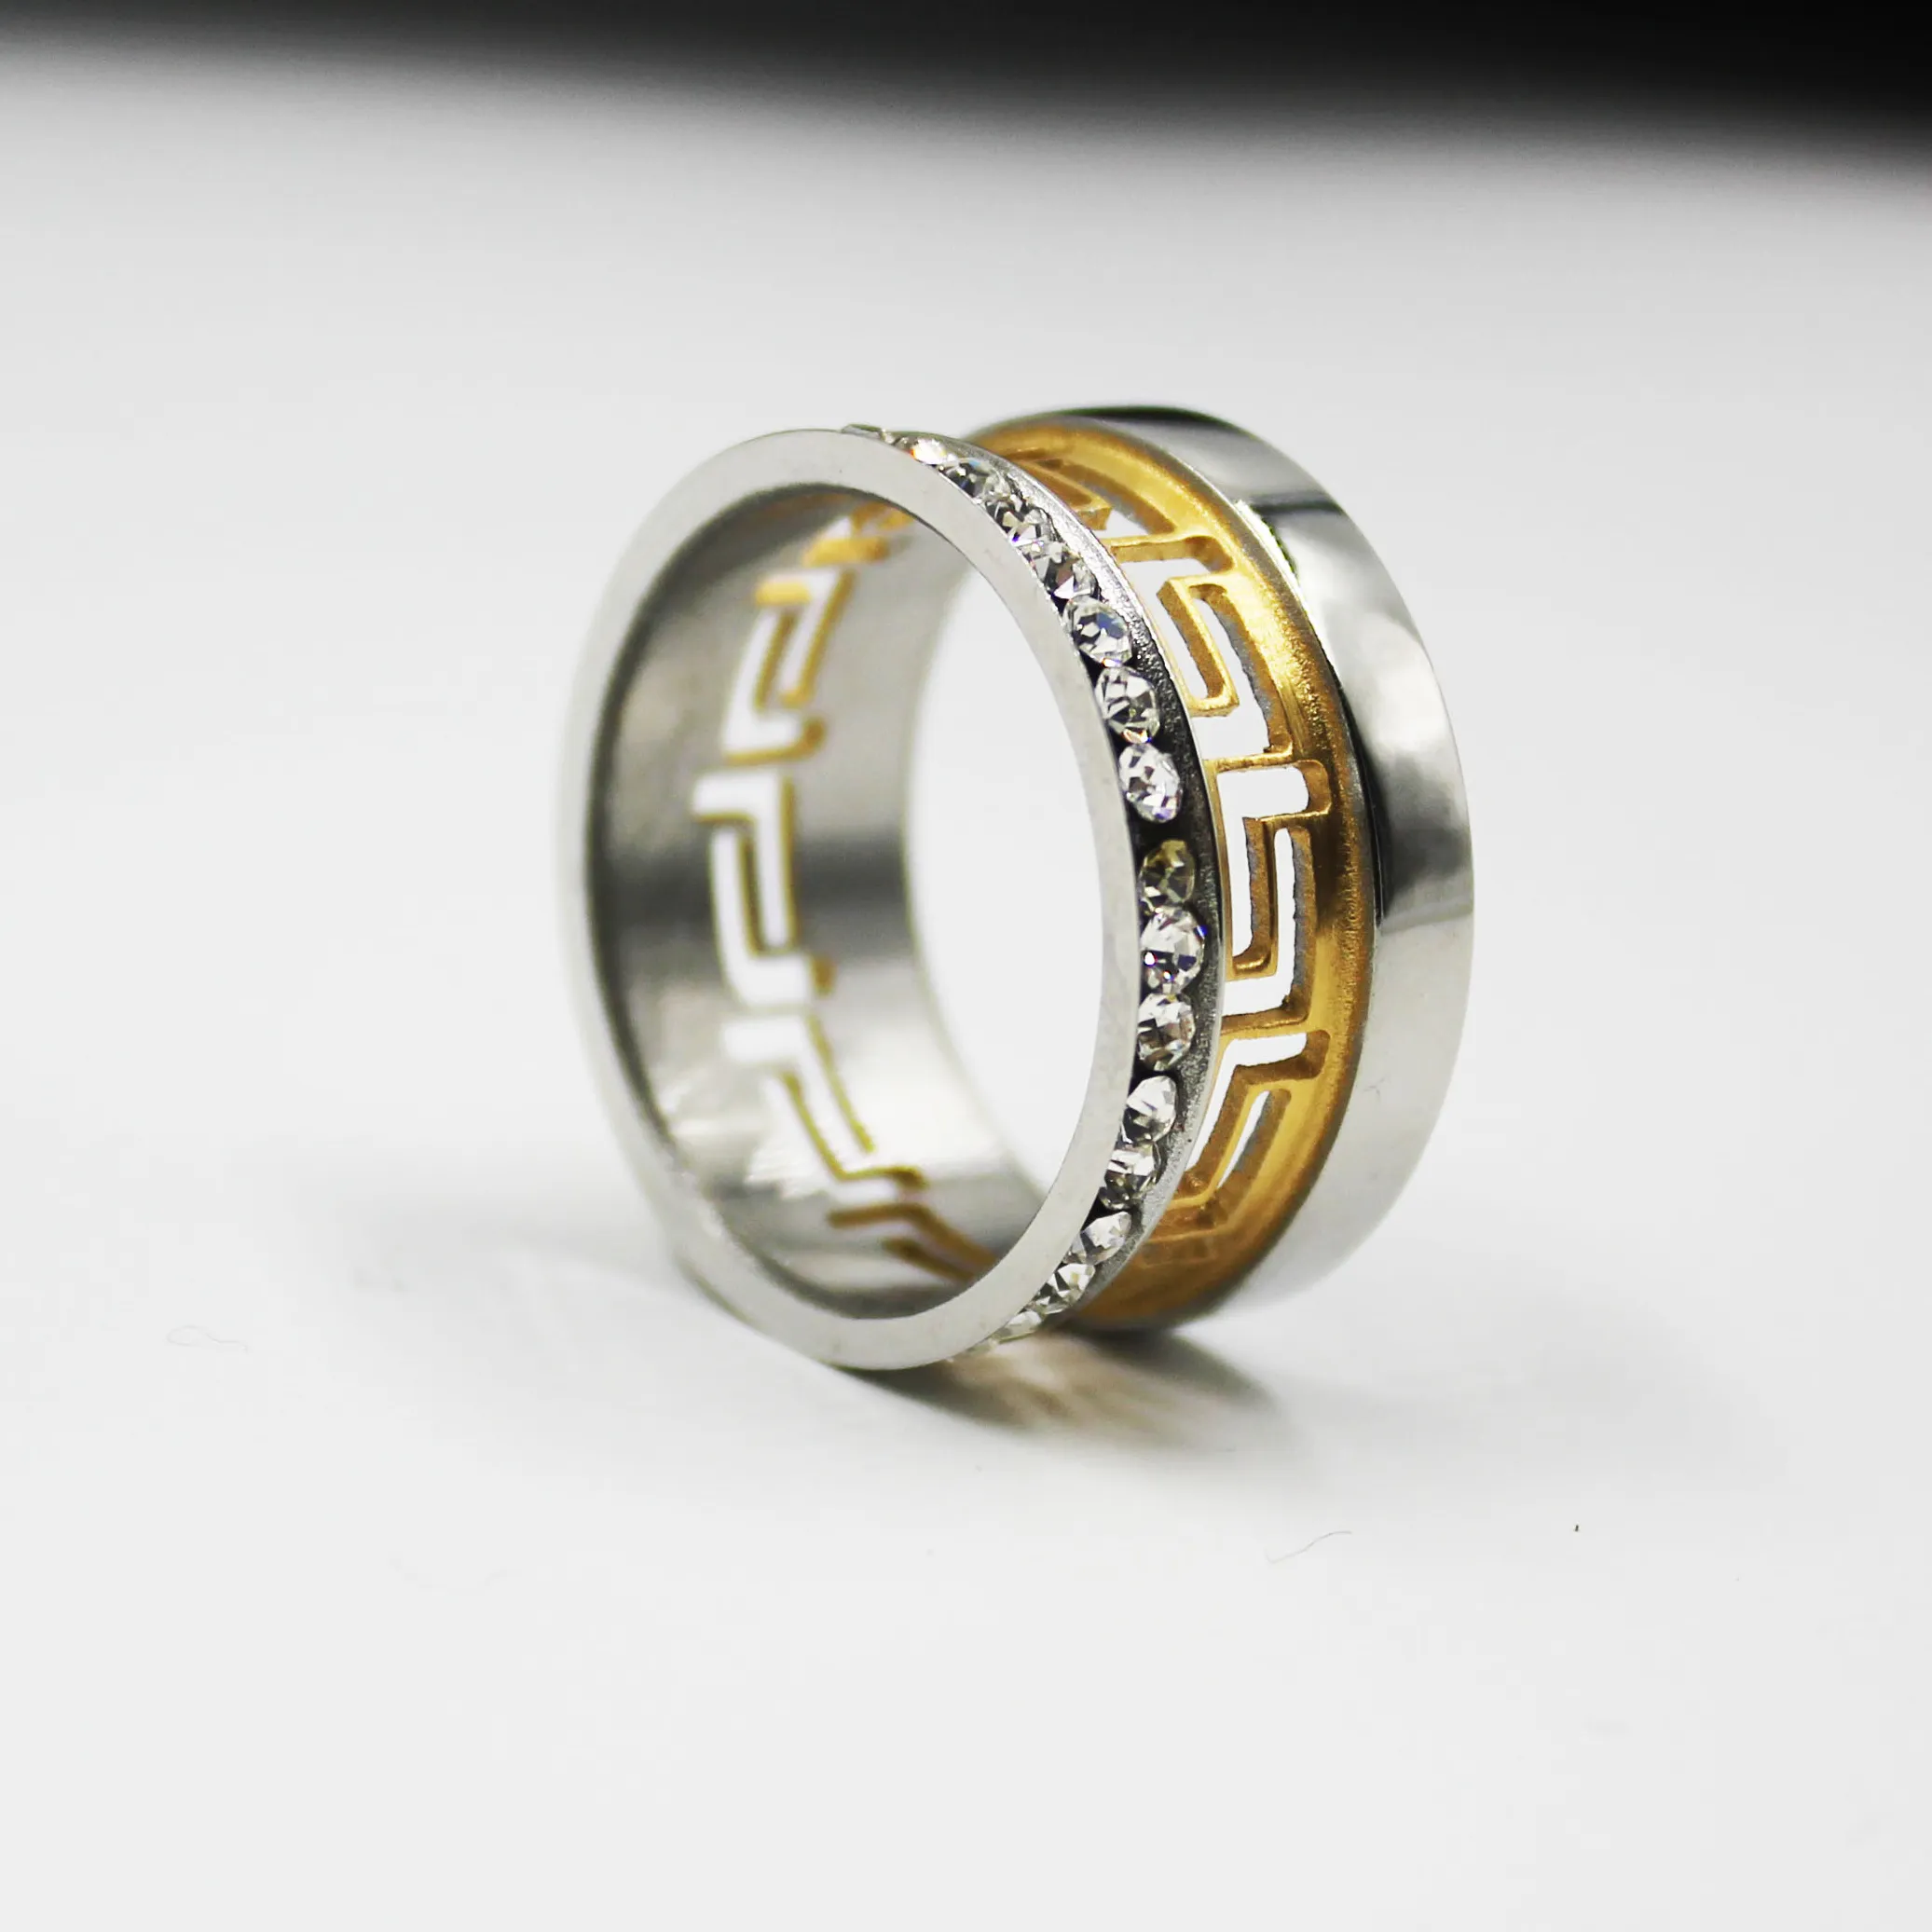 BMZ 316L Acero inoxidable quirúrgico de anillos de compromiso para los hombres de acero inoxidable exótico 3A anillos de piedra hoja de oro grabado anillo hueco